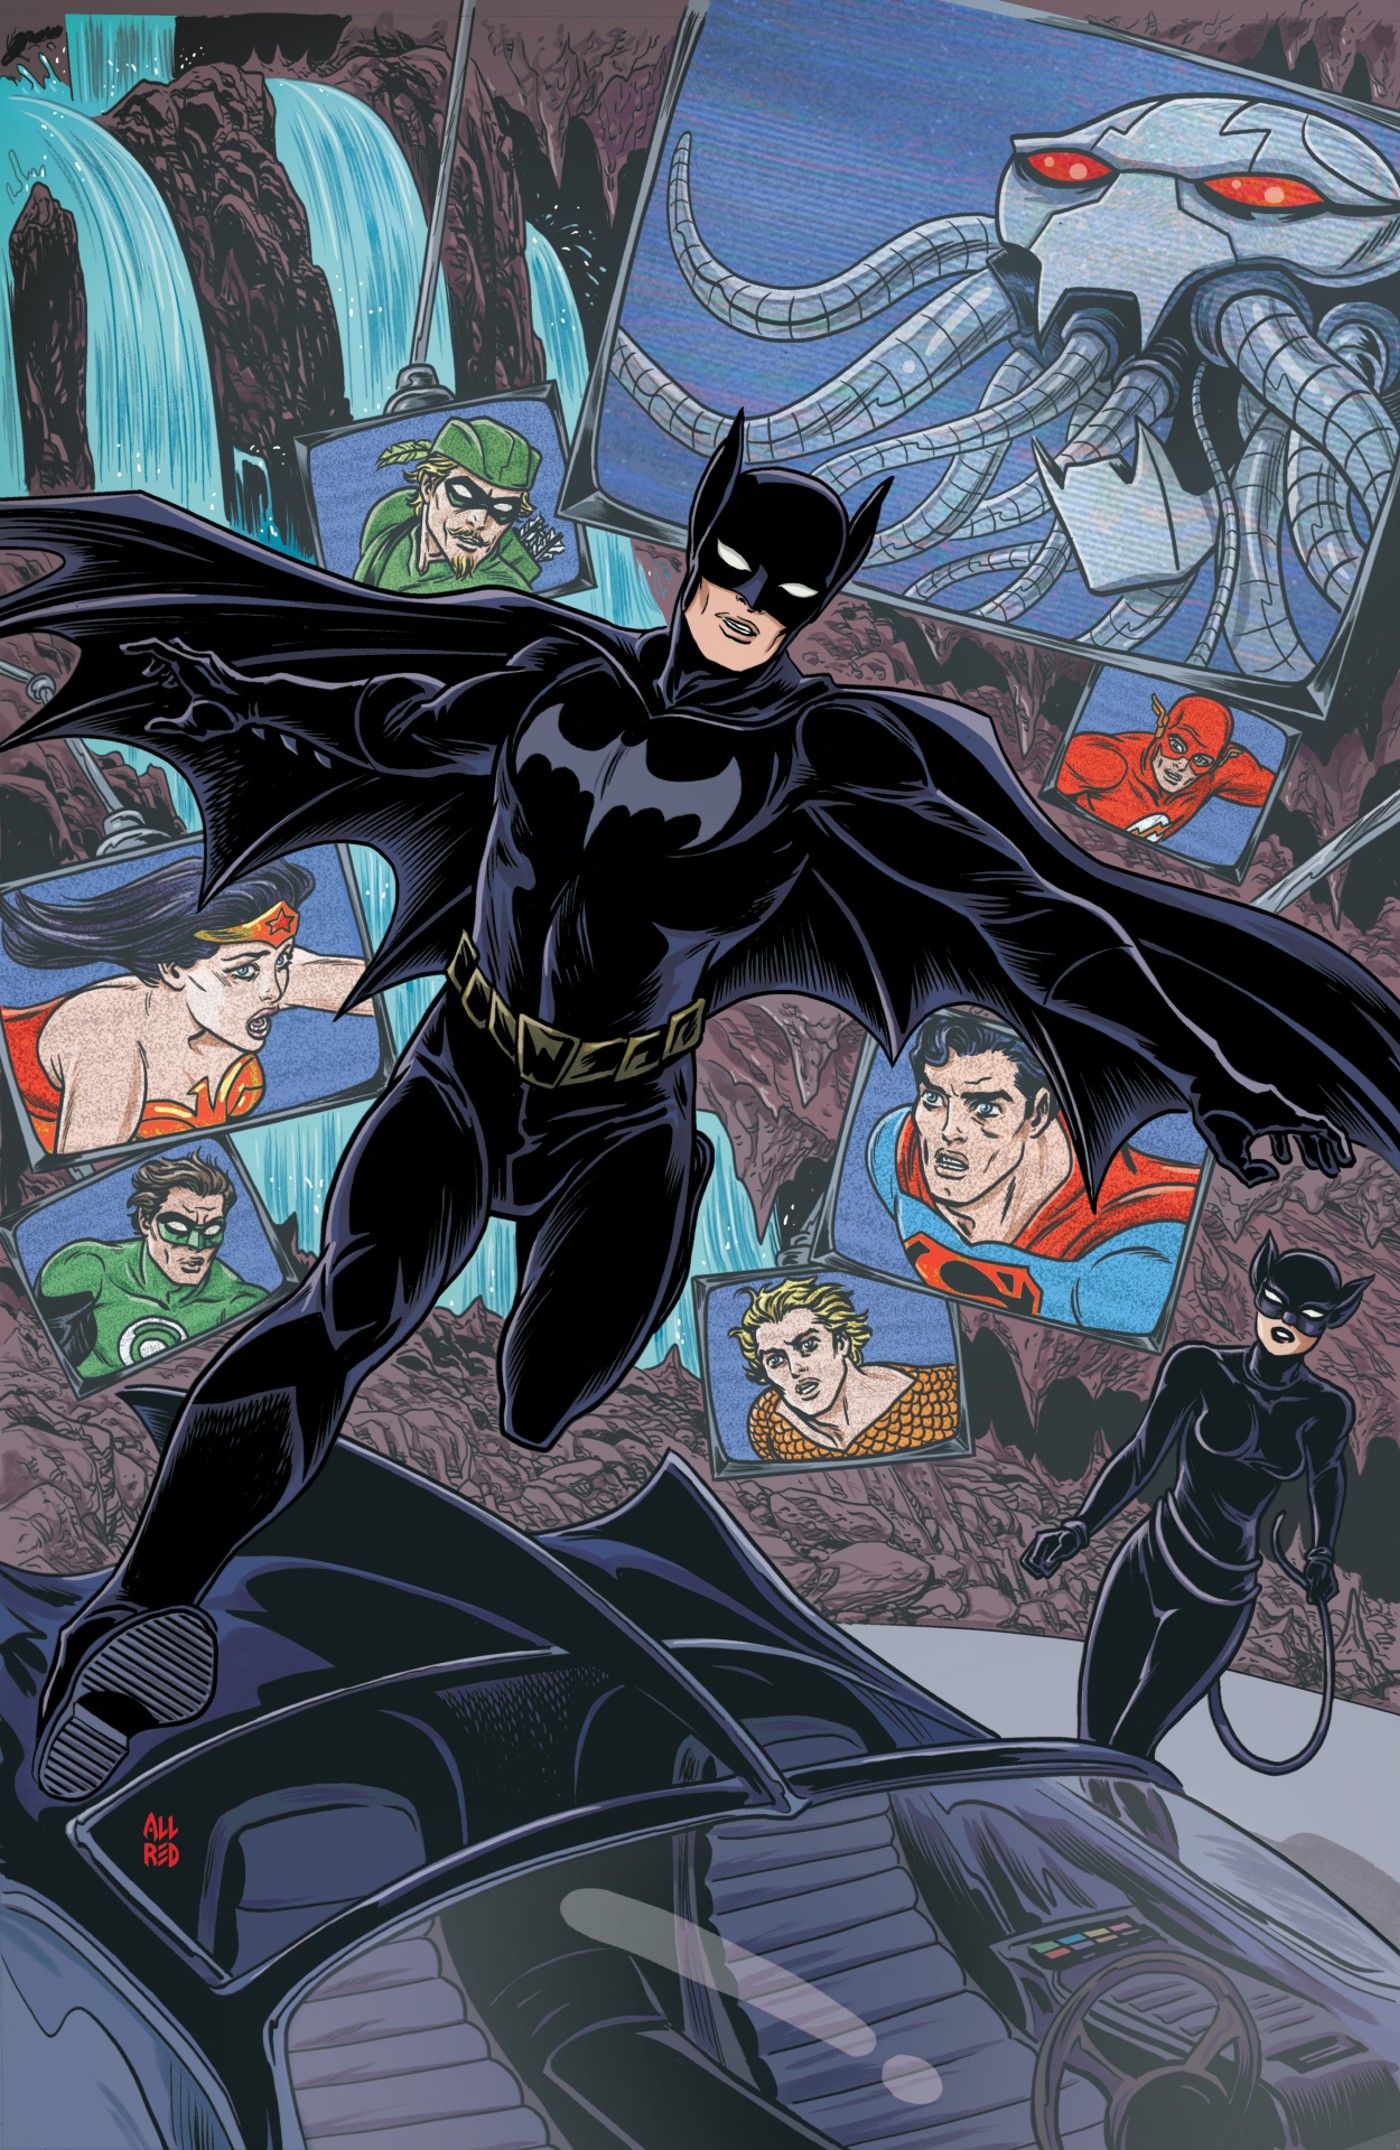 Batman corre em direção ao Batmóvel enquanto a Mulher-Gato observa, com imagens da Liga da Justiça ao fundo.